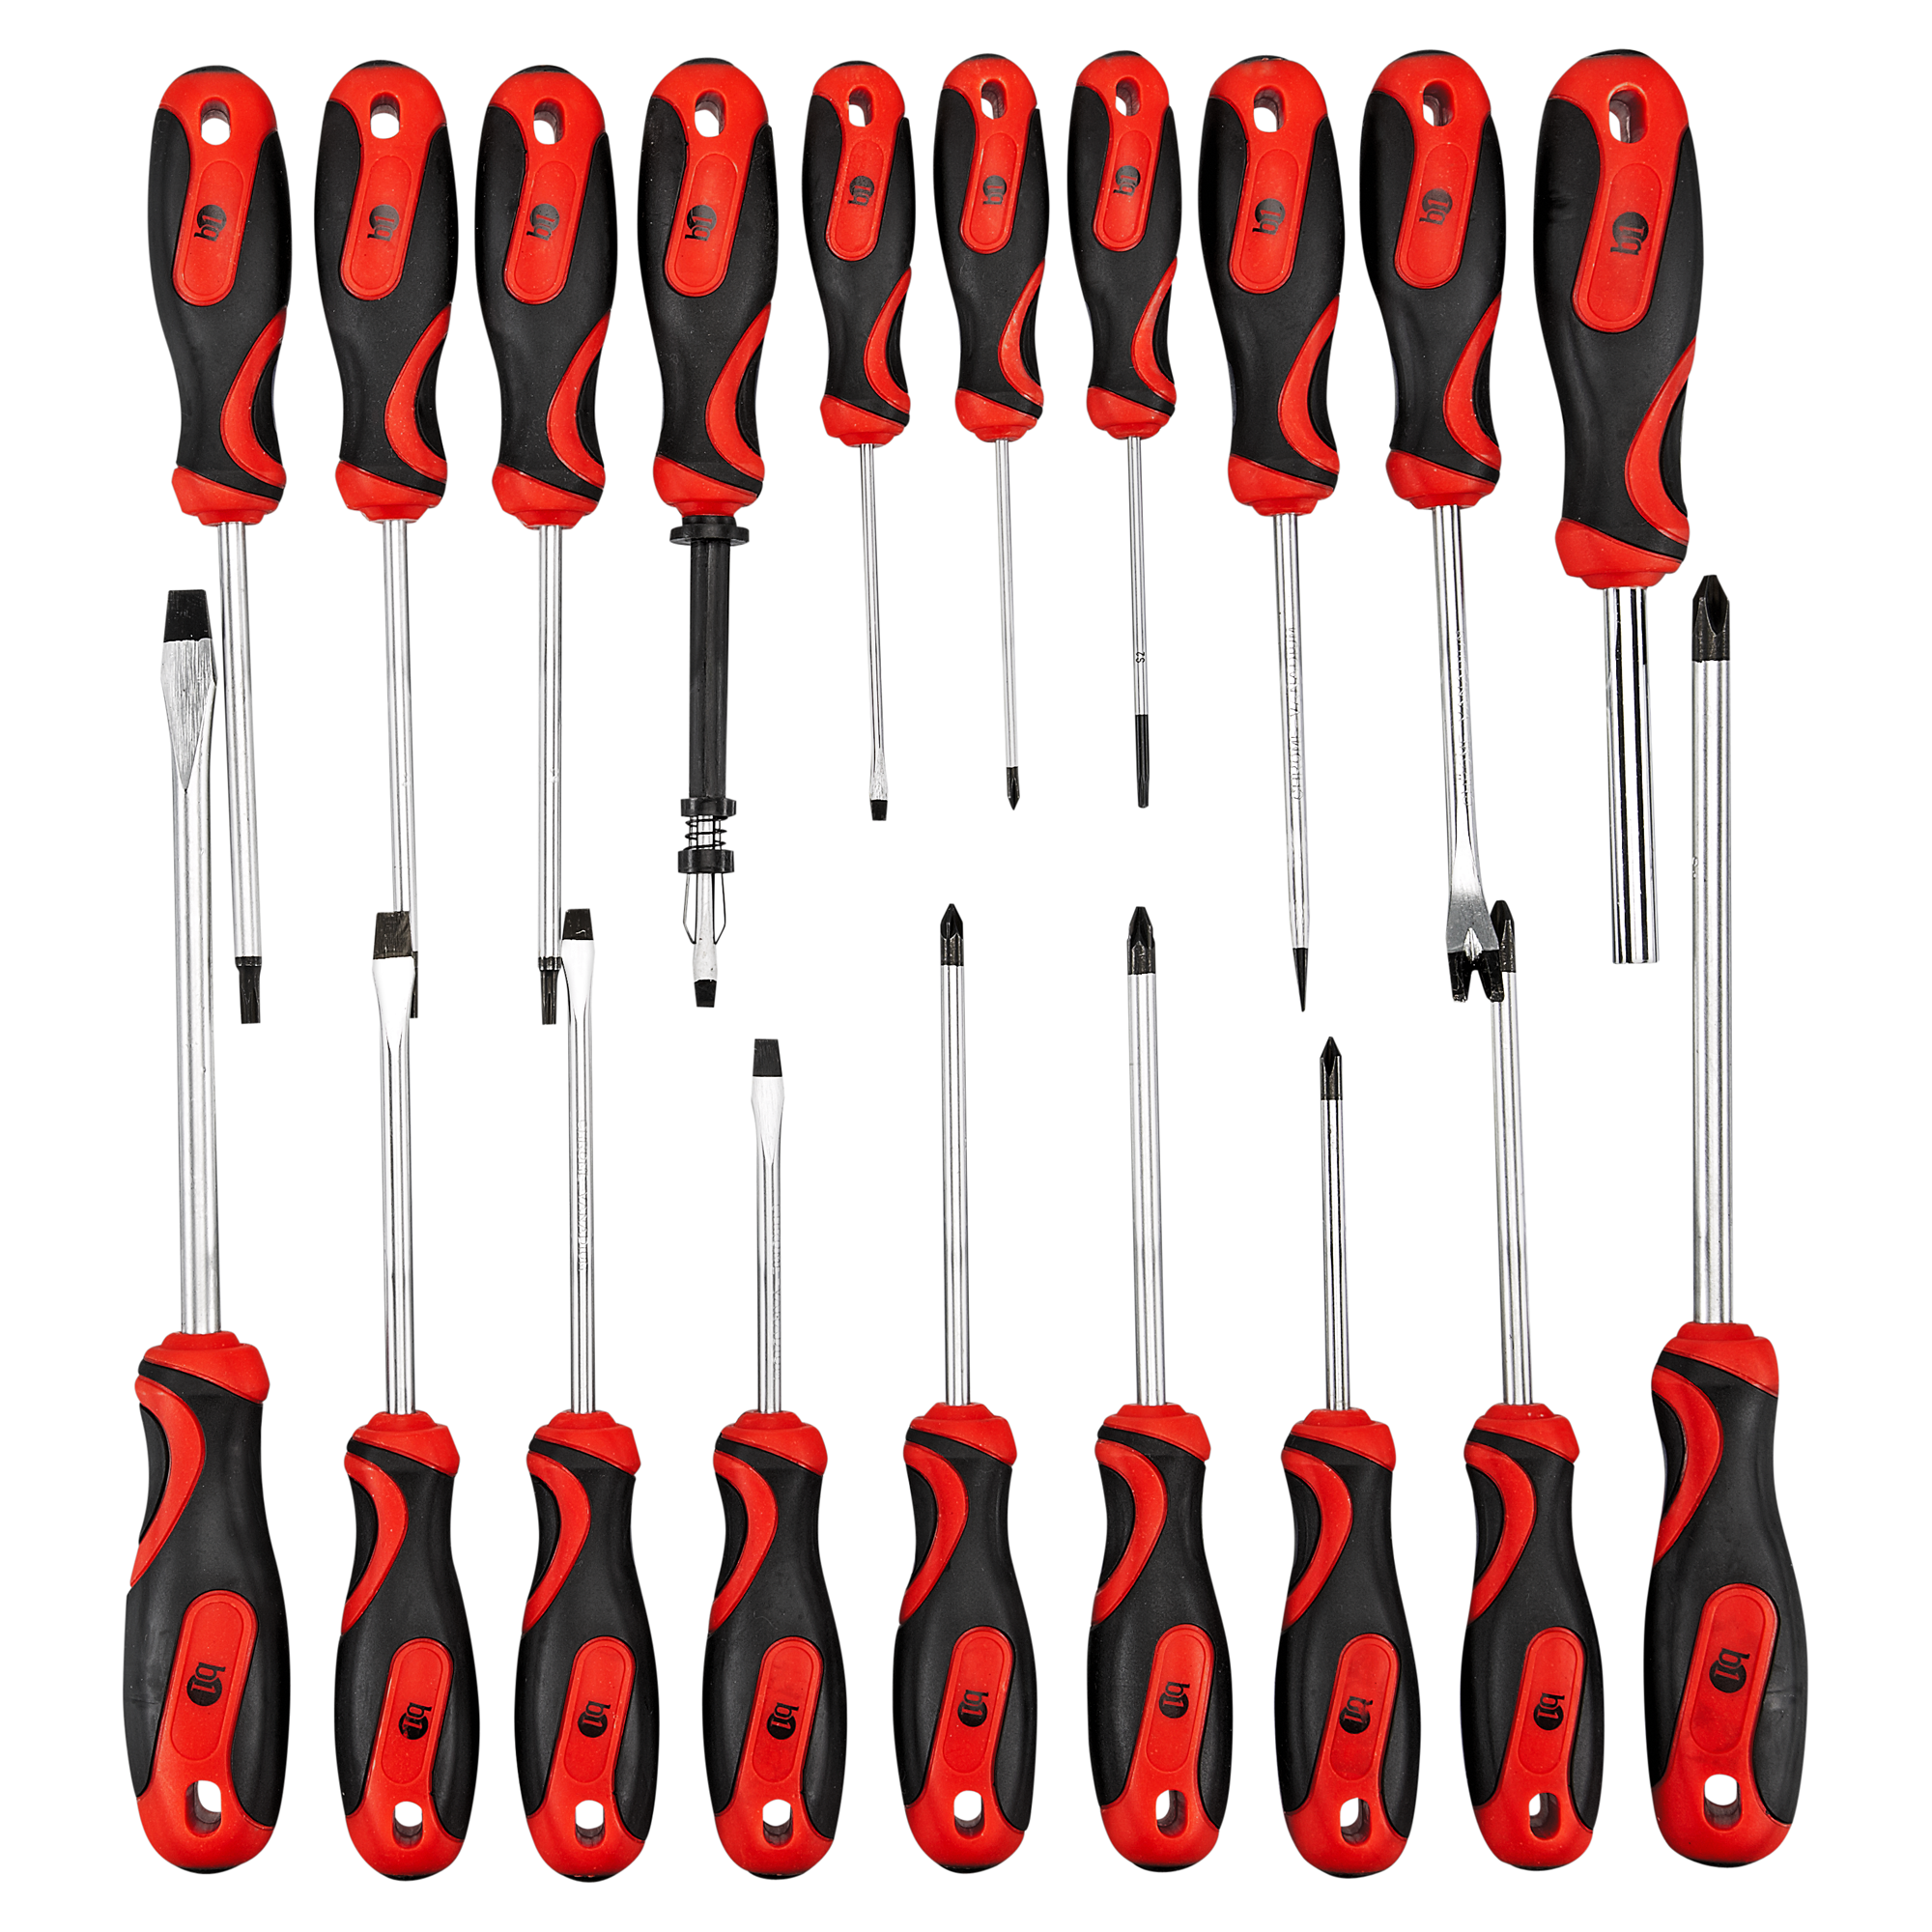 Haushalt Werkzeug Set, von Trimate, 15-teilig, Set beinhaltet - Hammer,  Schraubenschlüssel, Zange (Werkzeug für Zuhause, Büro oder Auto) (Rot)